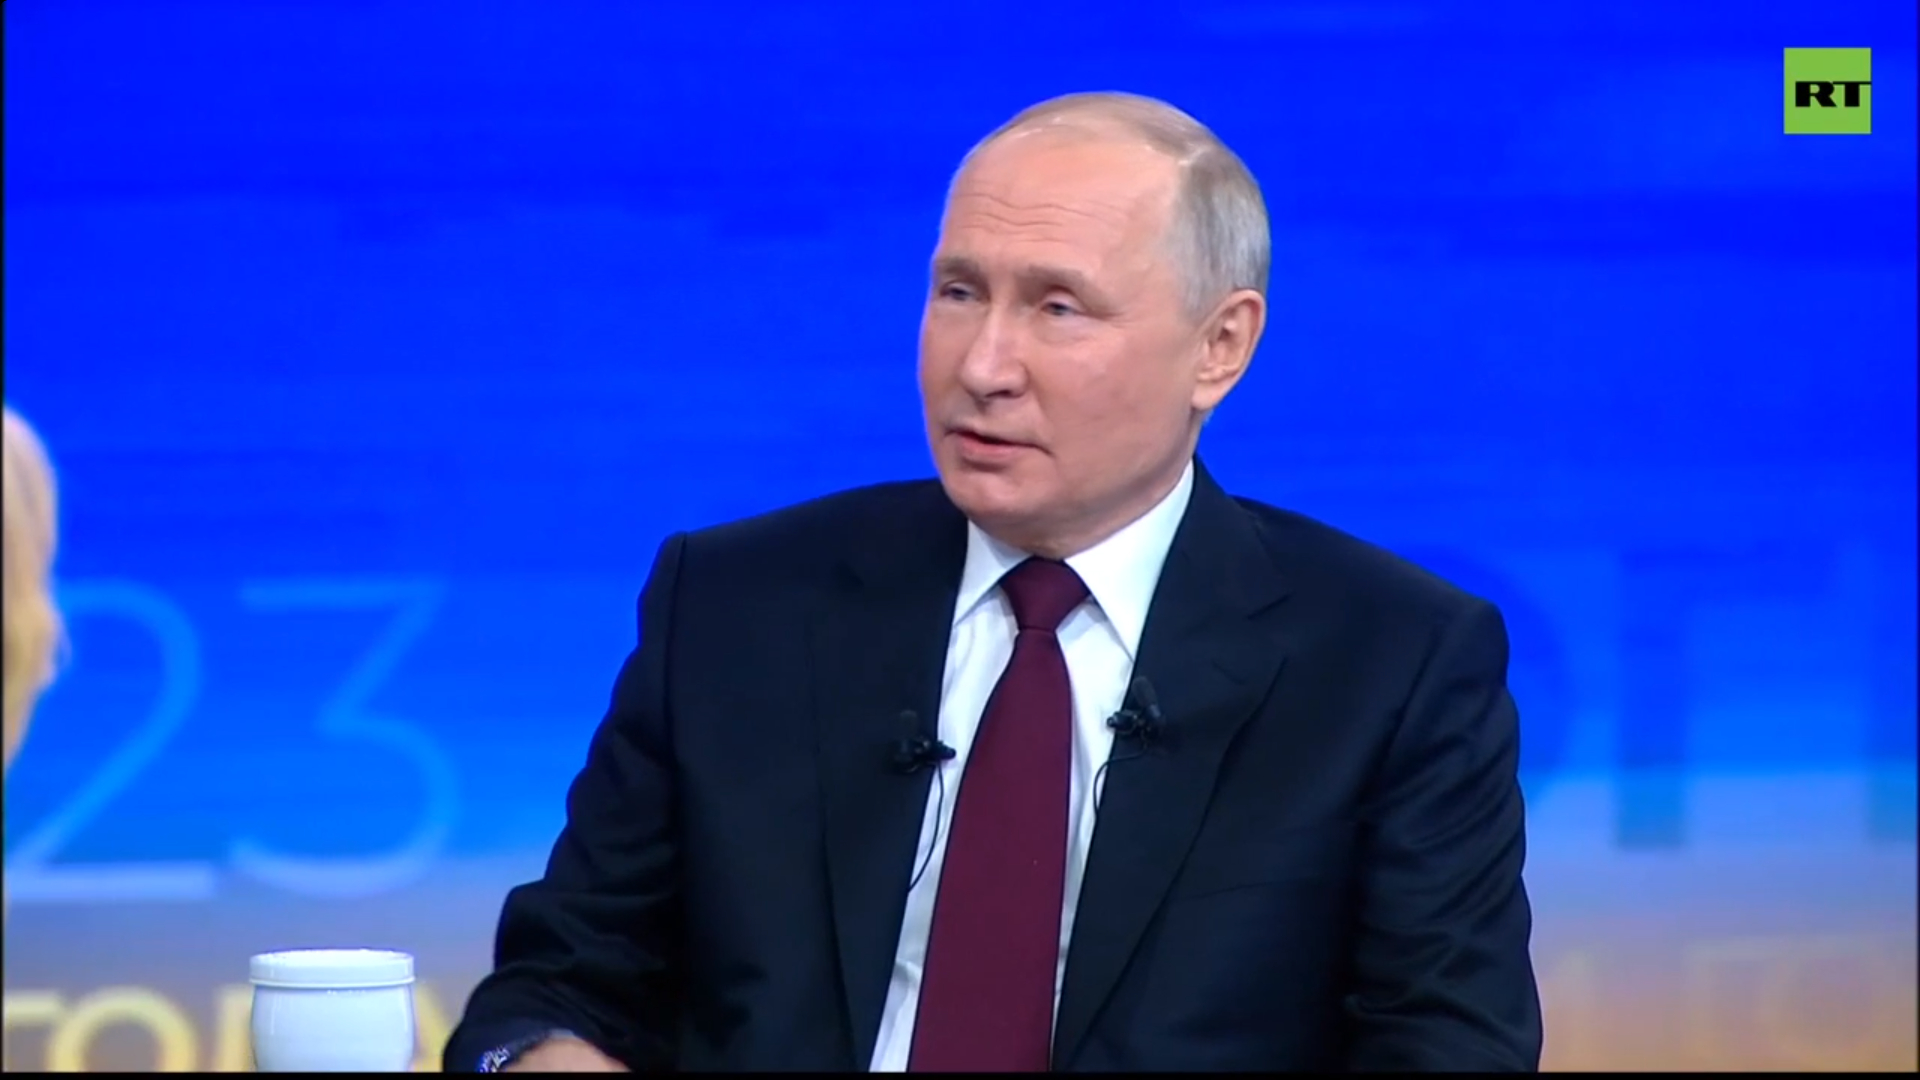 Разовая выплата до двух миллионов рублей: Путин предложил новую меру поддержки в России